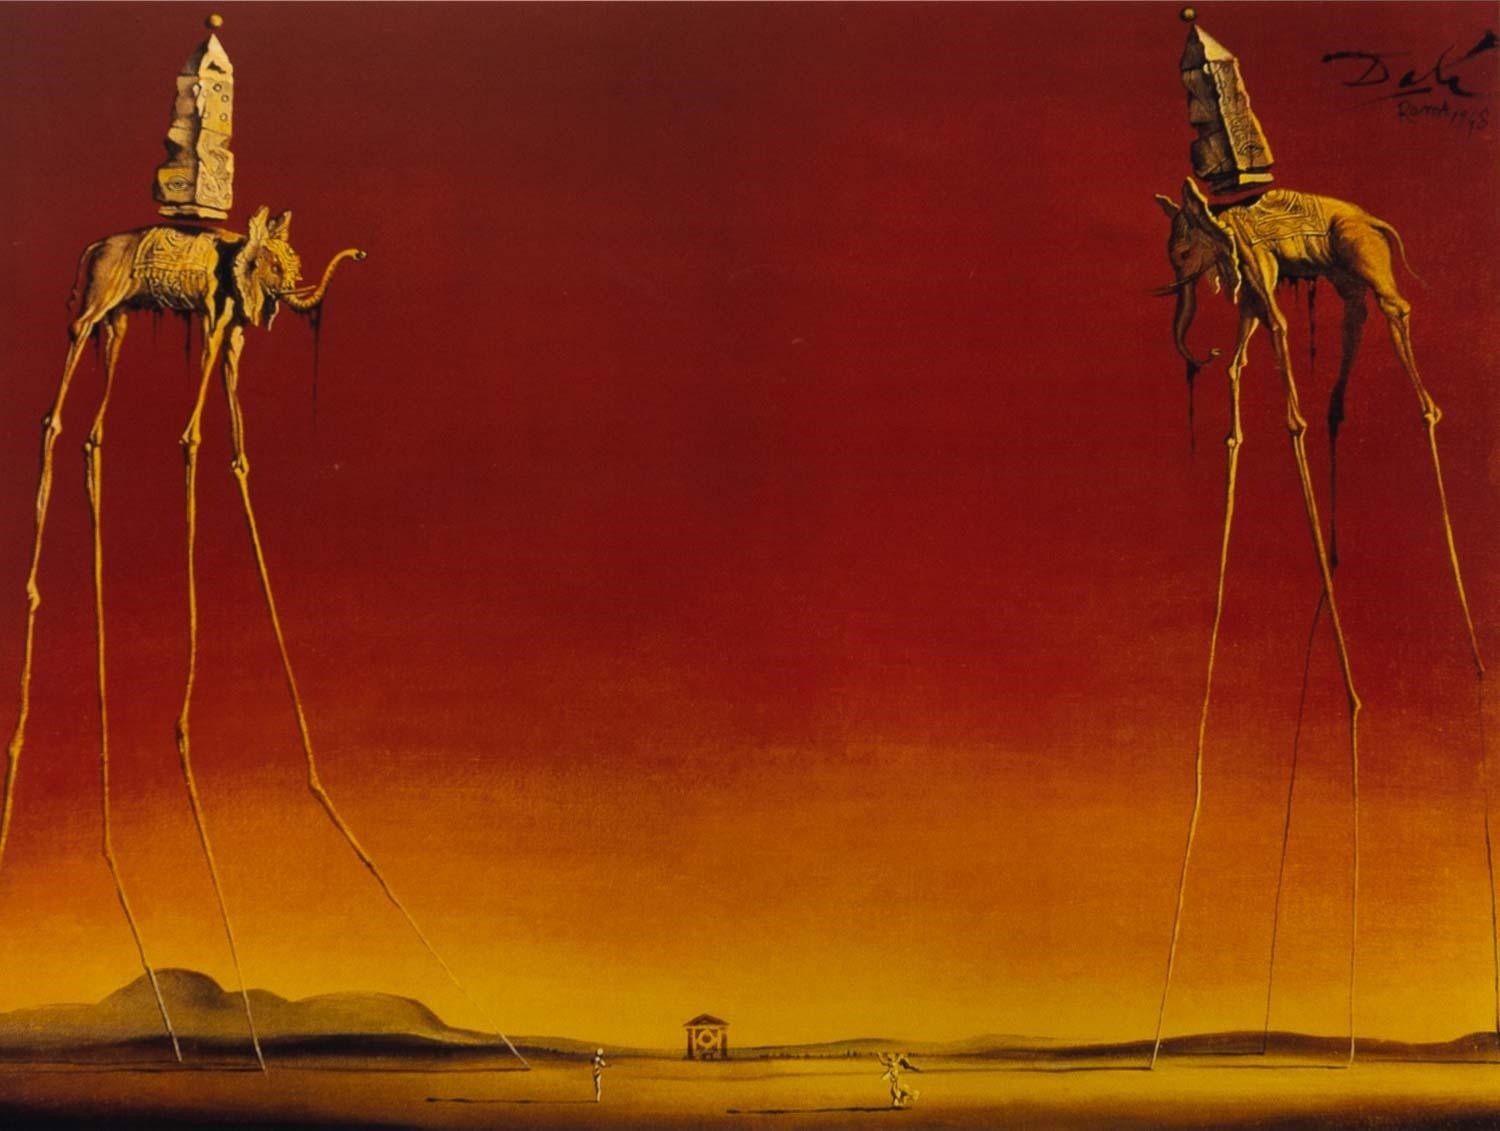 The Elephants by Salvador Dalí